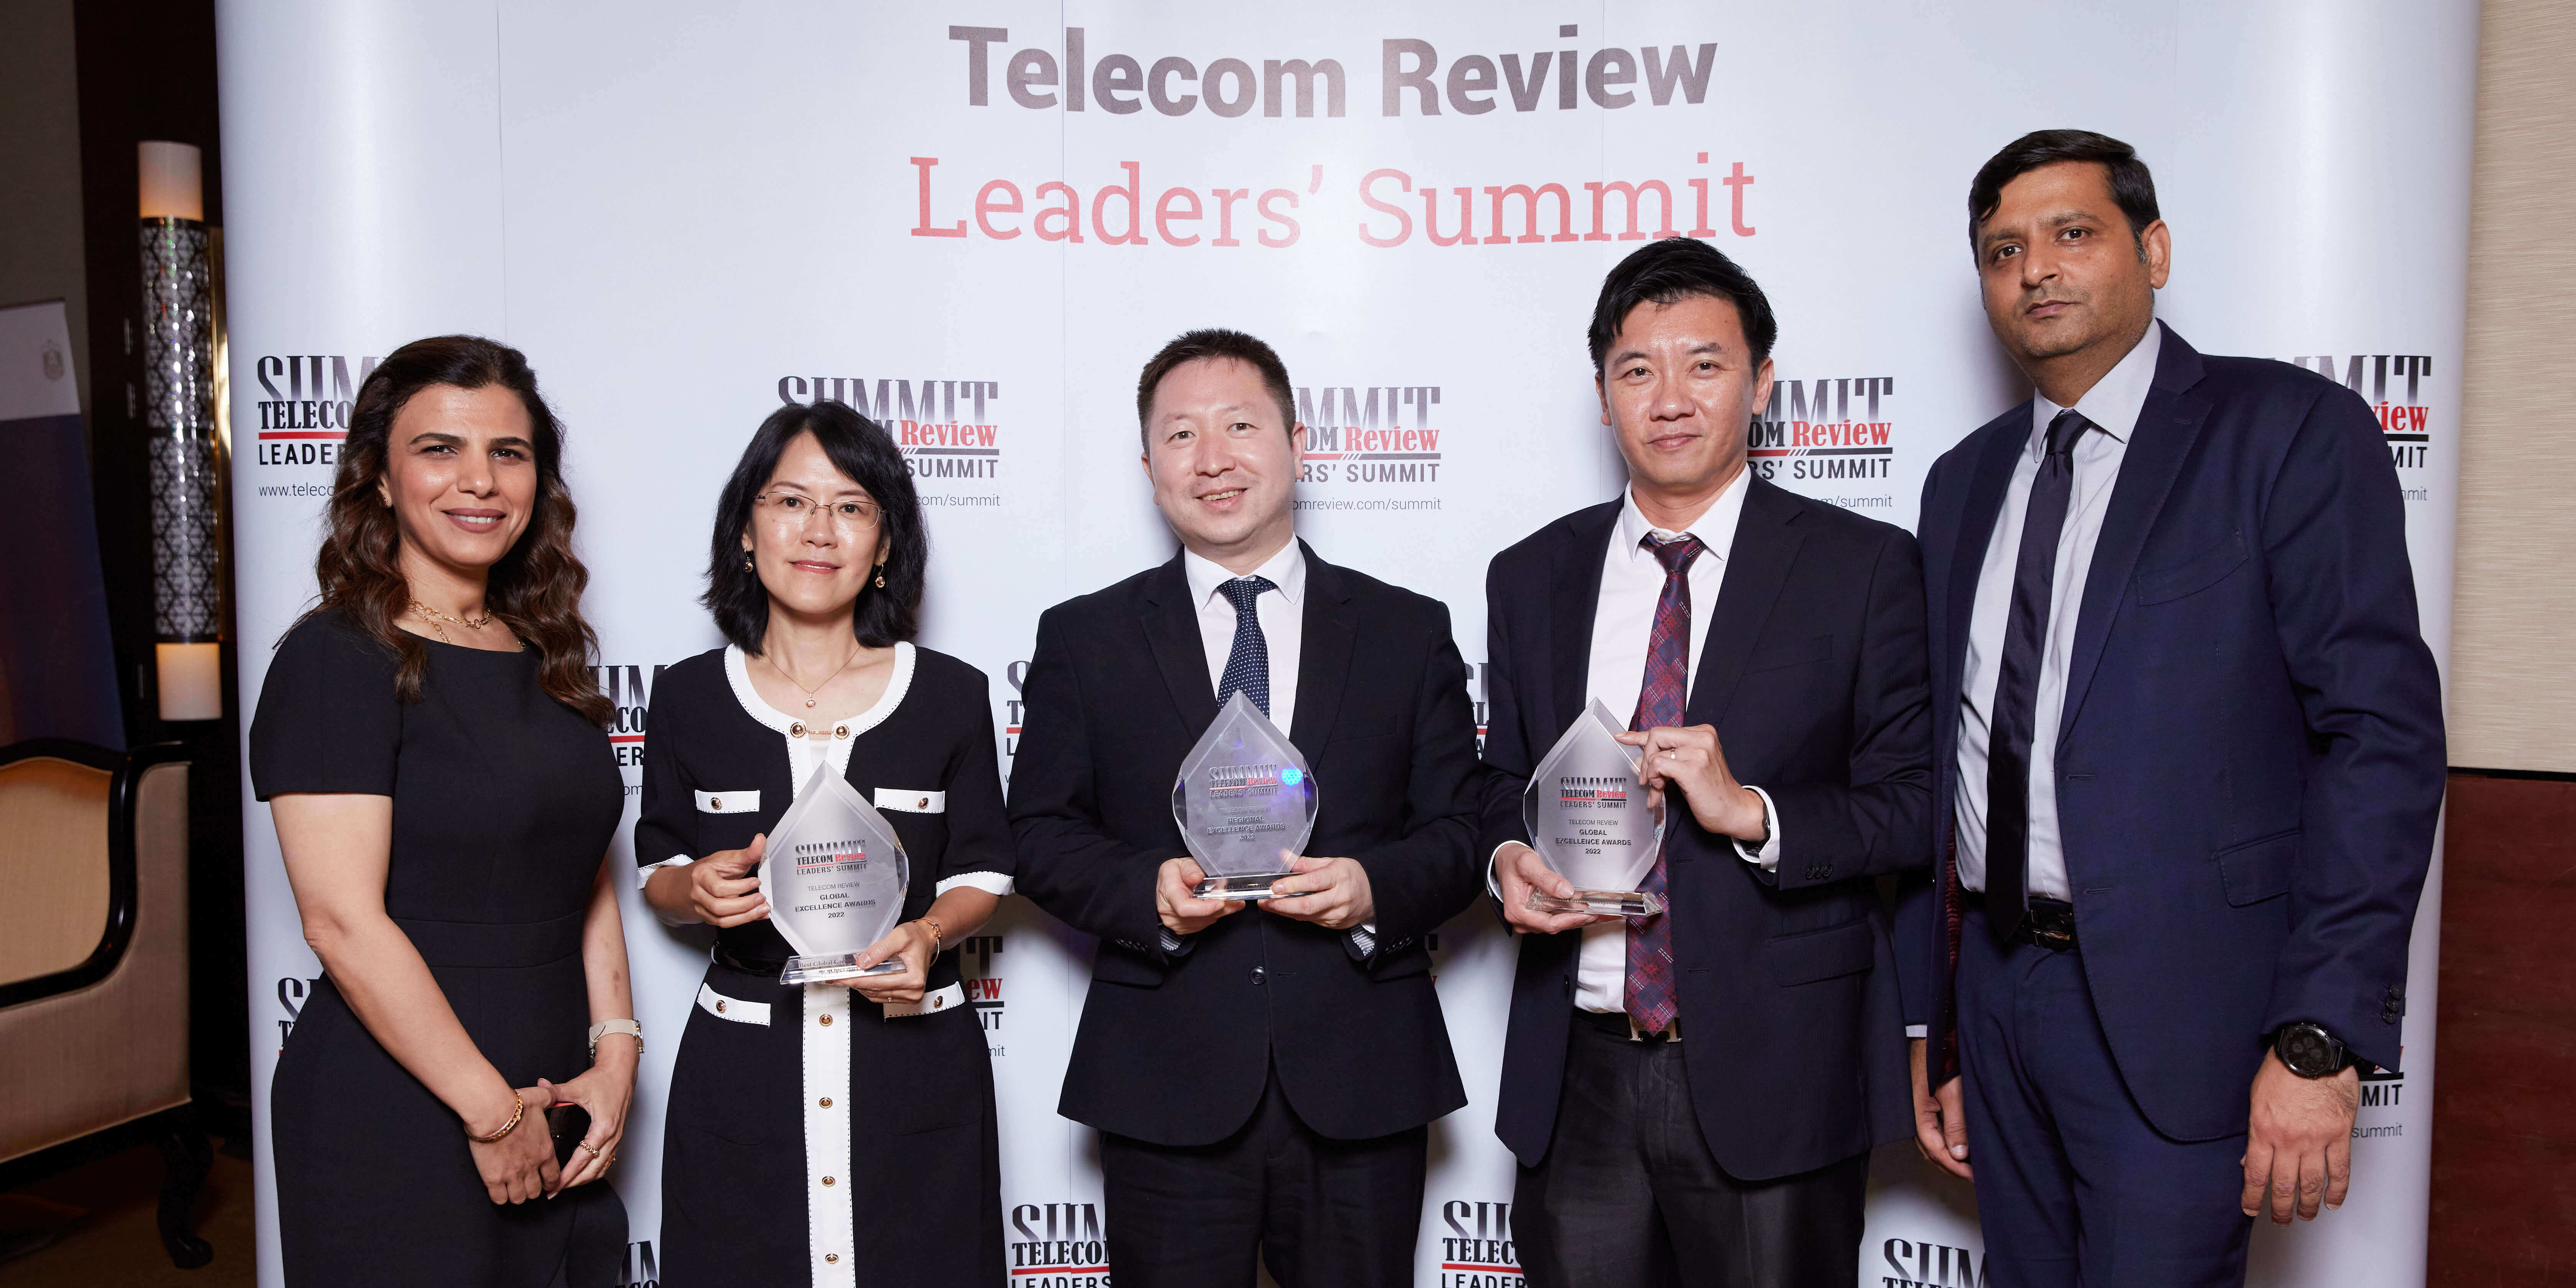 Telecom Review Excellence Awards